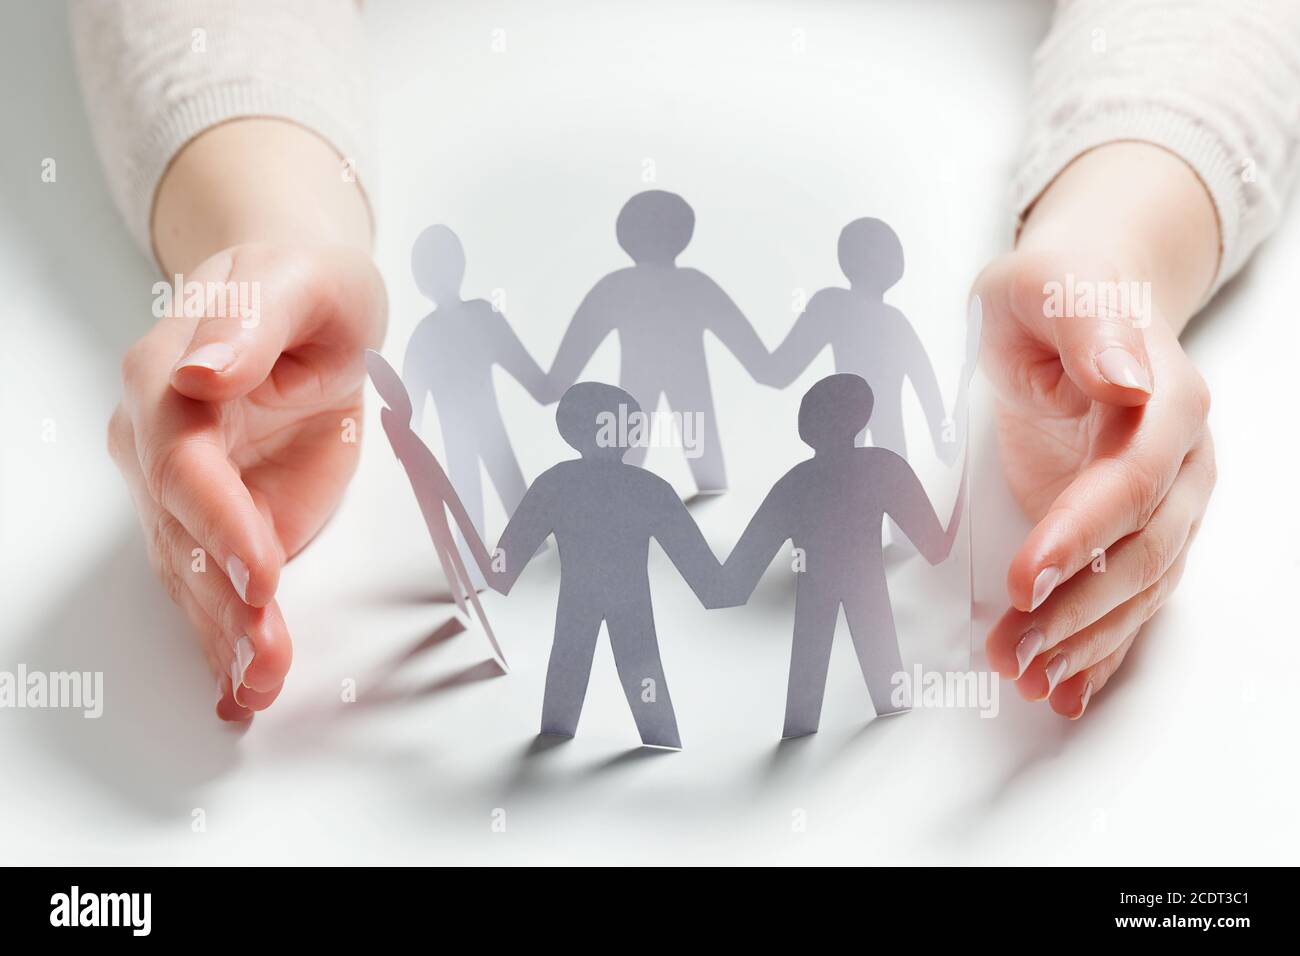 Papier personnes entourées par les mains dans le geste de protection. Concept d'assurance Banque D'Images